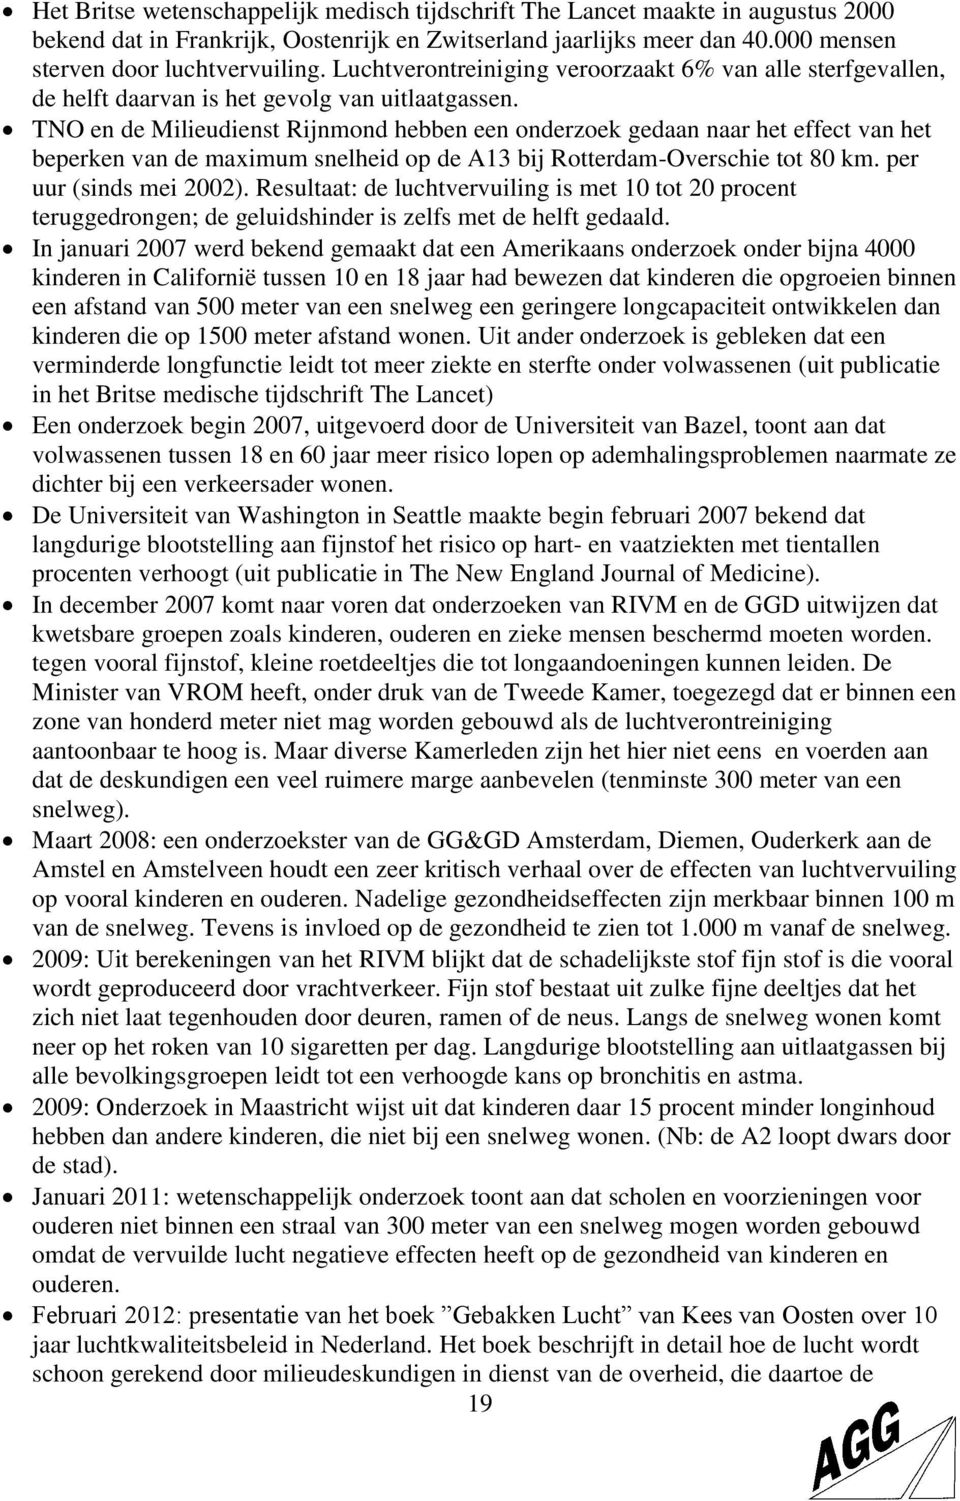 TNO en de Milieudienst Rijnmond hebben een onderzoek gedaan naar het effect van het beperken van de maximum snelheid op de A13 bij Rotterdam-Overschie tot 80 km. per uur (sinds mei 2002).